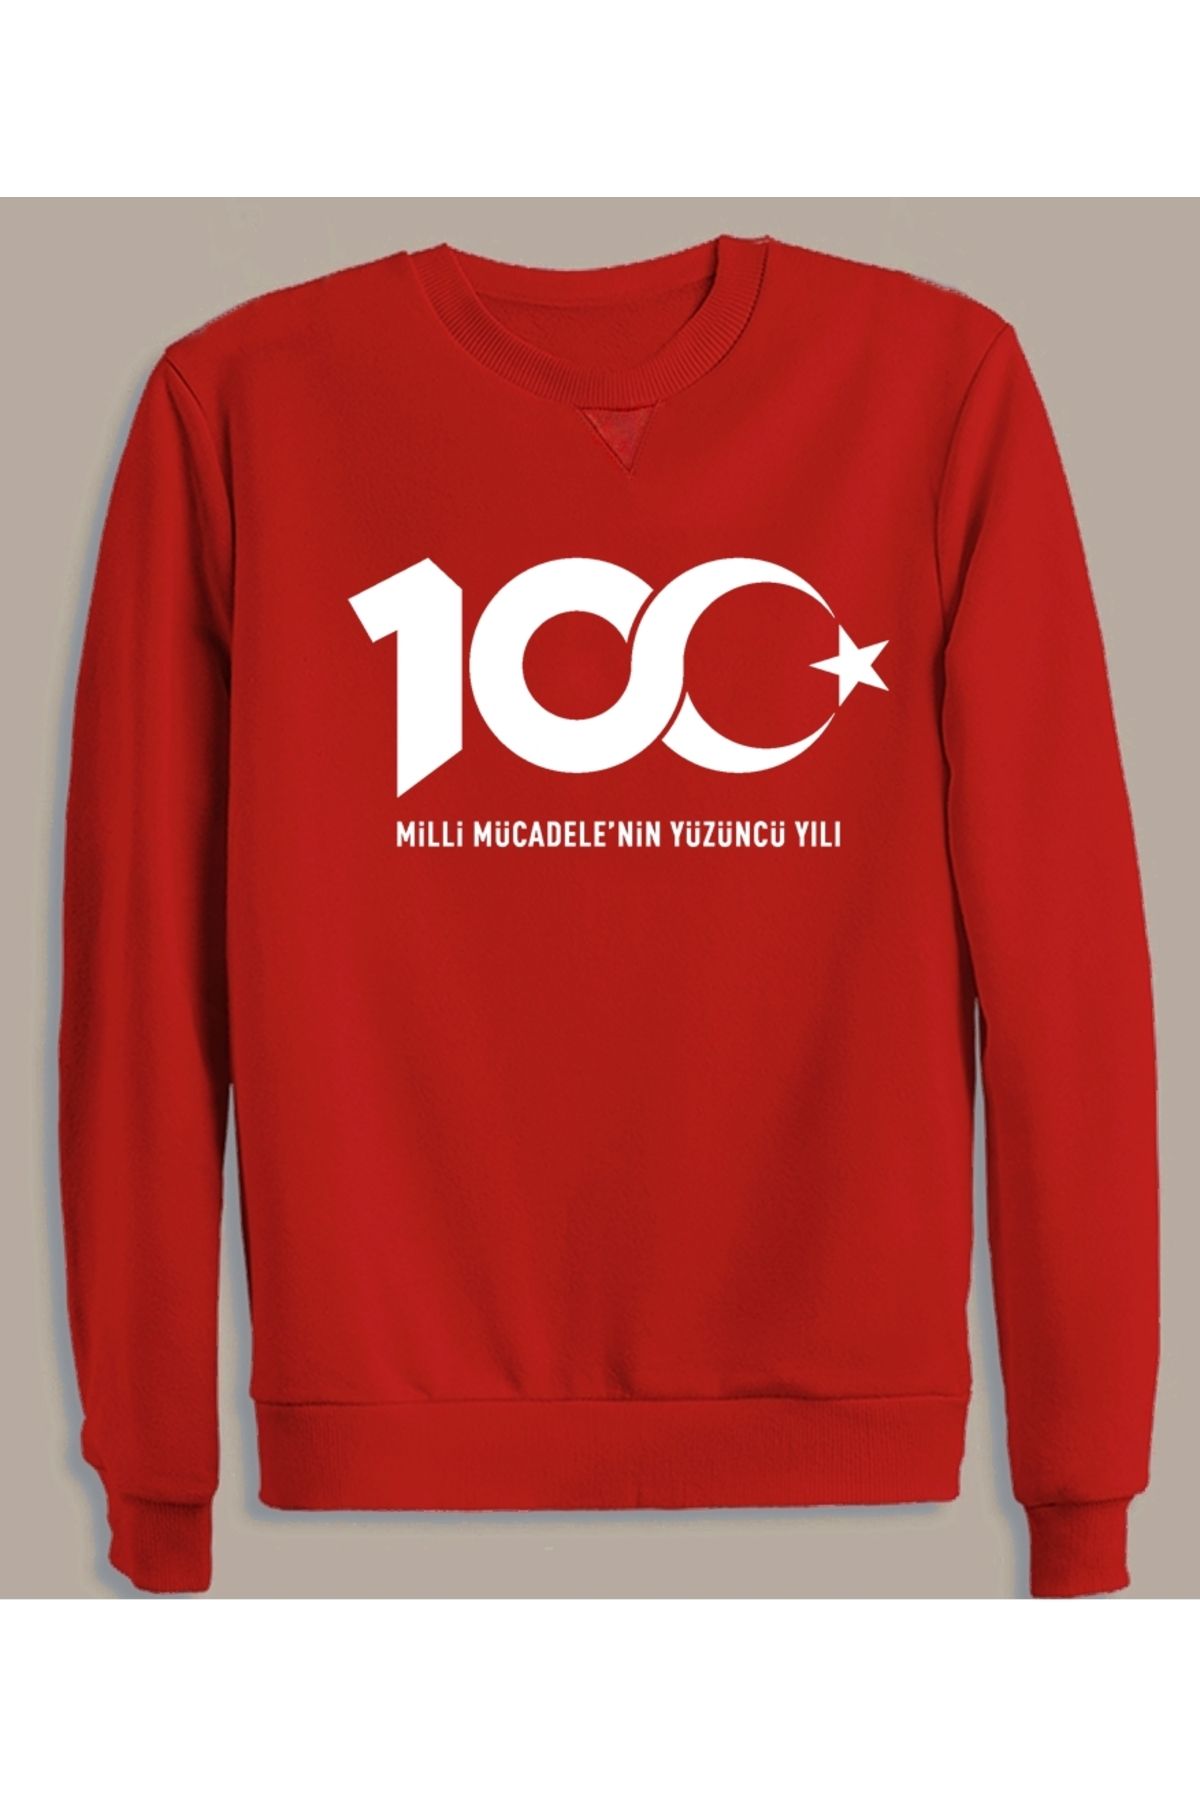 Efendioğlu Design Kırmızı 100.yıl Logo 29 Erkek Fiyatı, Pamuklu Sweatshirt Yorumları Trendyol Ekim Türkiye - Baskılı